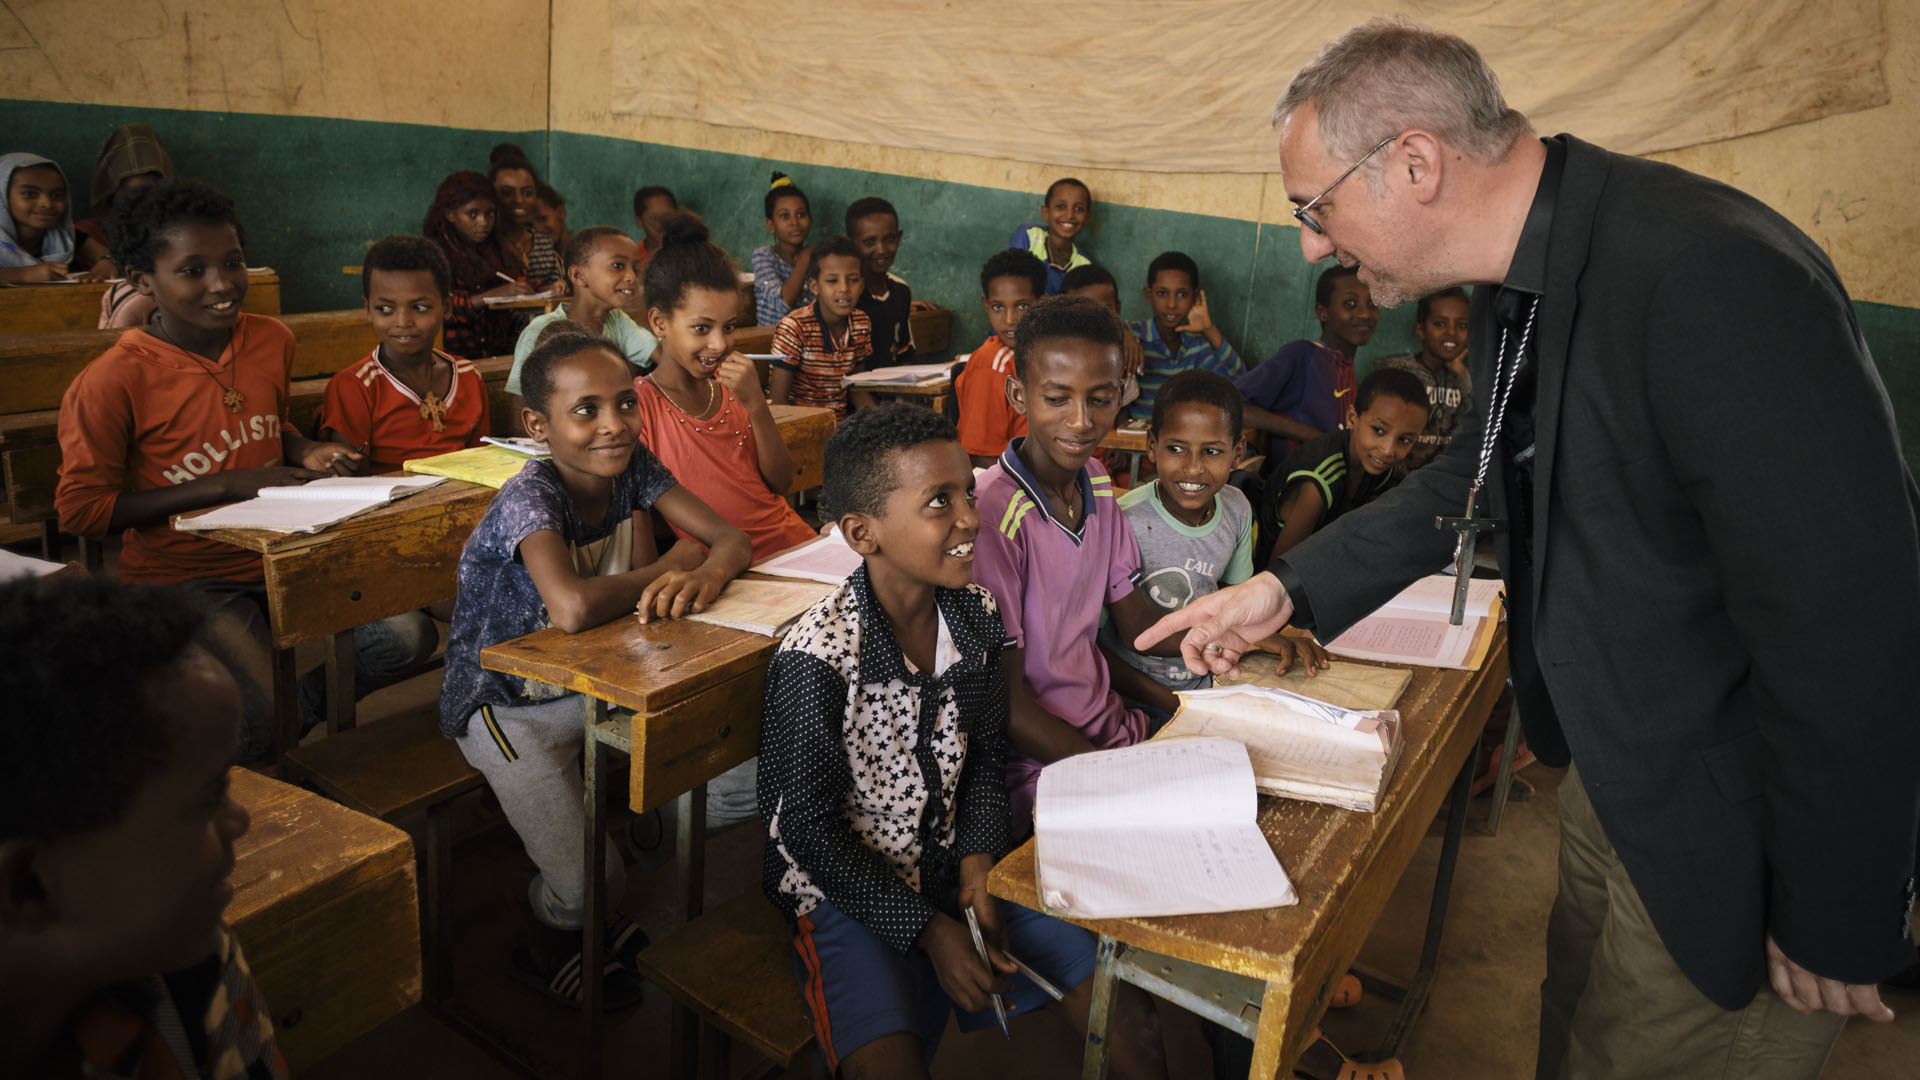 Ende Mai besuchte Erzbischof Stefan Heße Äthiopien. Nicht nur zum Weltflüchtlingstag sei es wichtig, sich ins Gedächtnis zu rufen, worum es gehe: „(Es gehe) nicht um abstrakte Zahlen, sondern um Menschen mit konkreten Bedürfnissen“.